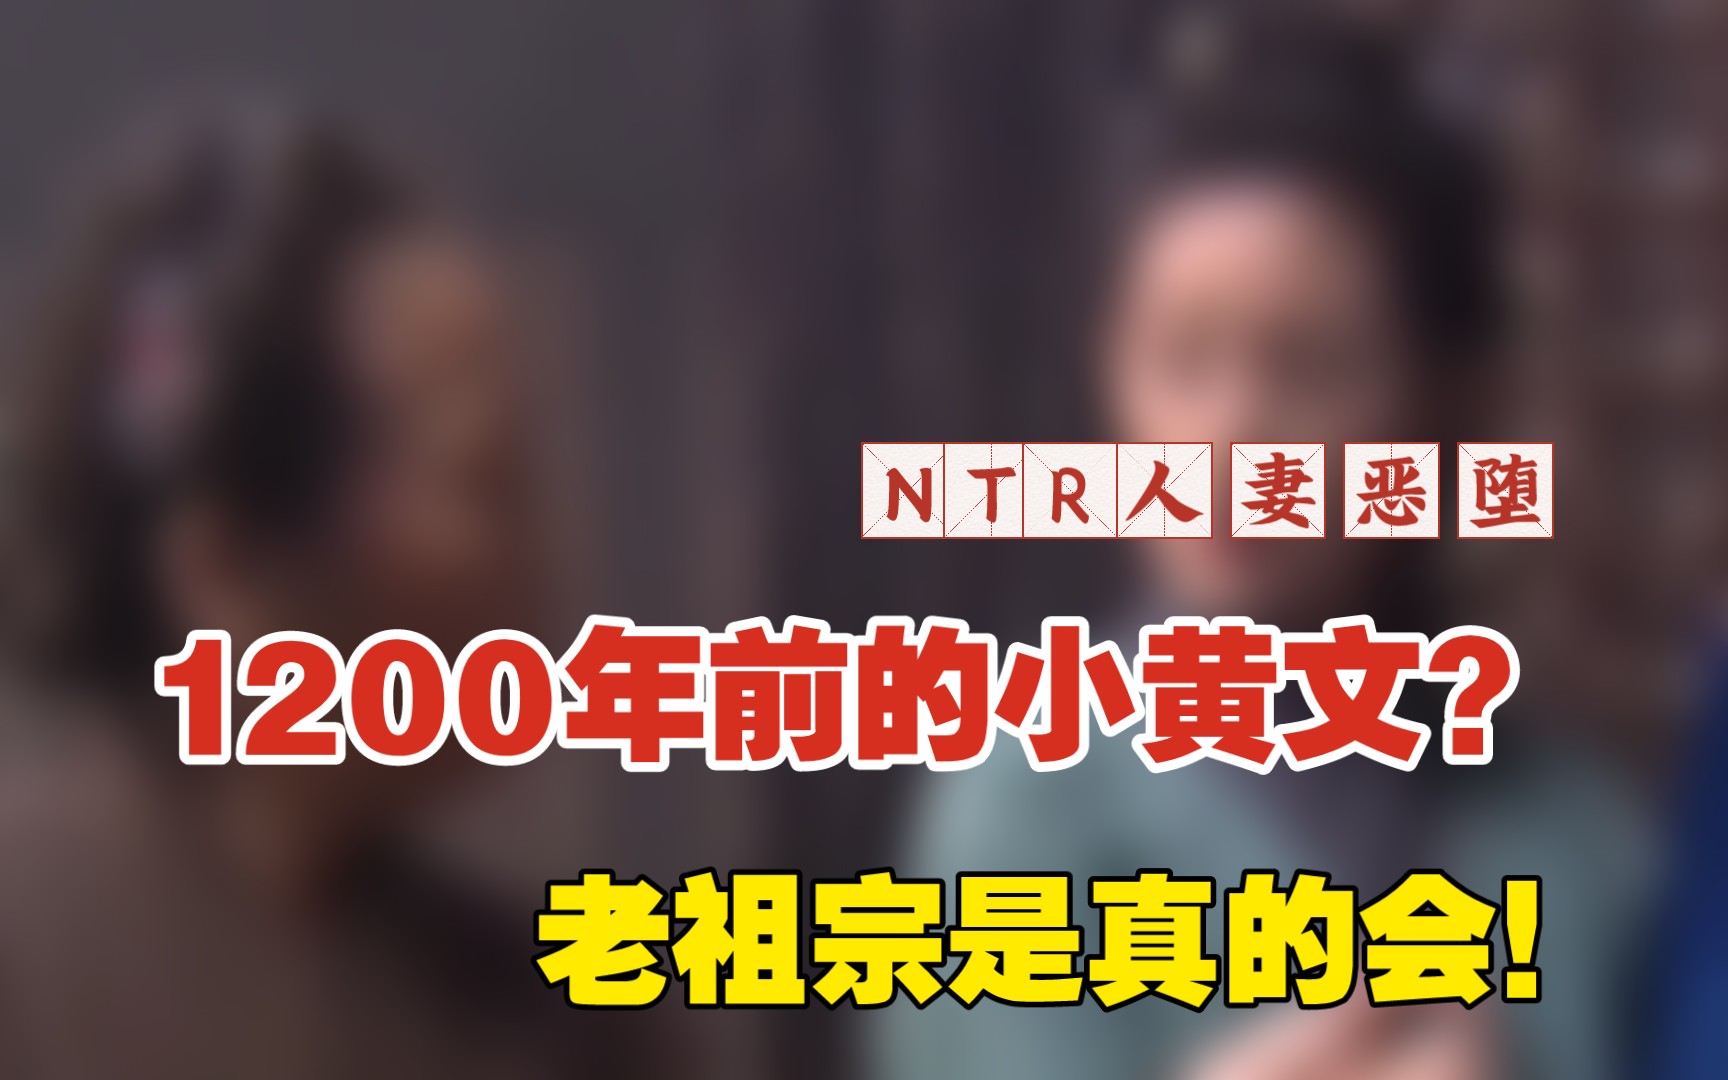 熱爆娛樂: 《3D肉蒲團》葉山豪48歲近況曝光 意外撞樣蔣志光？ #蔣志光